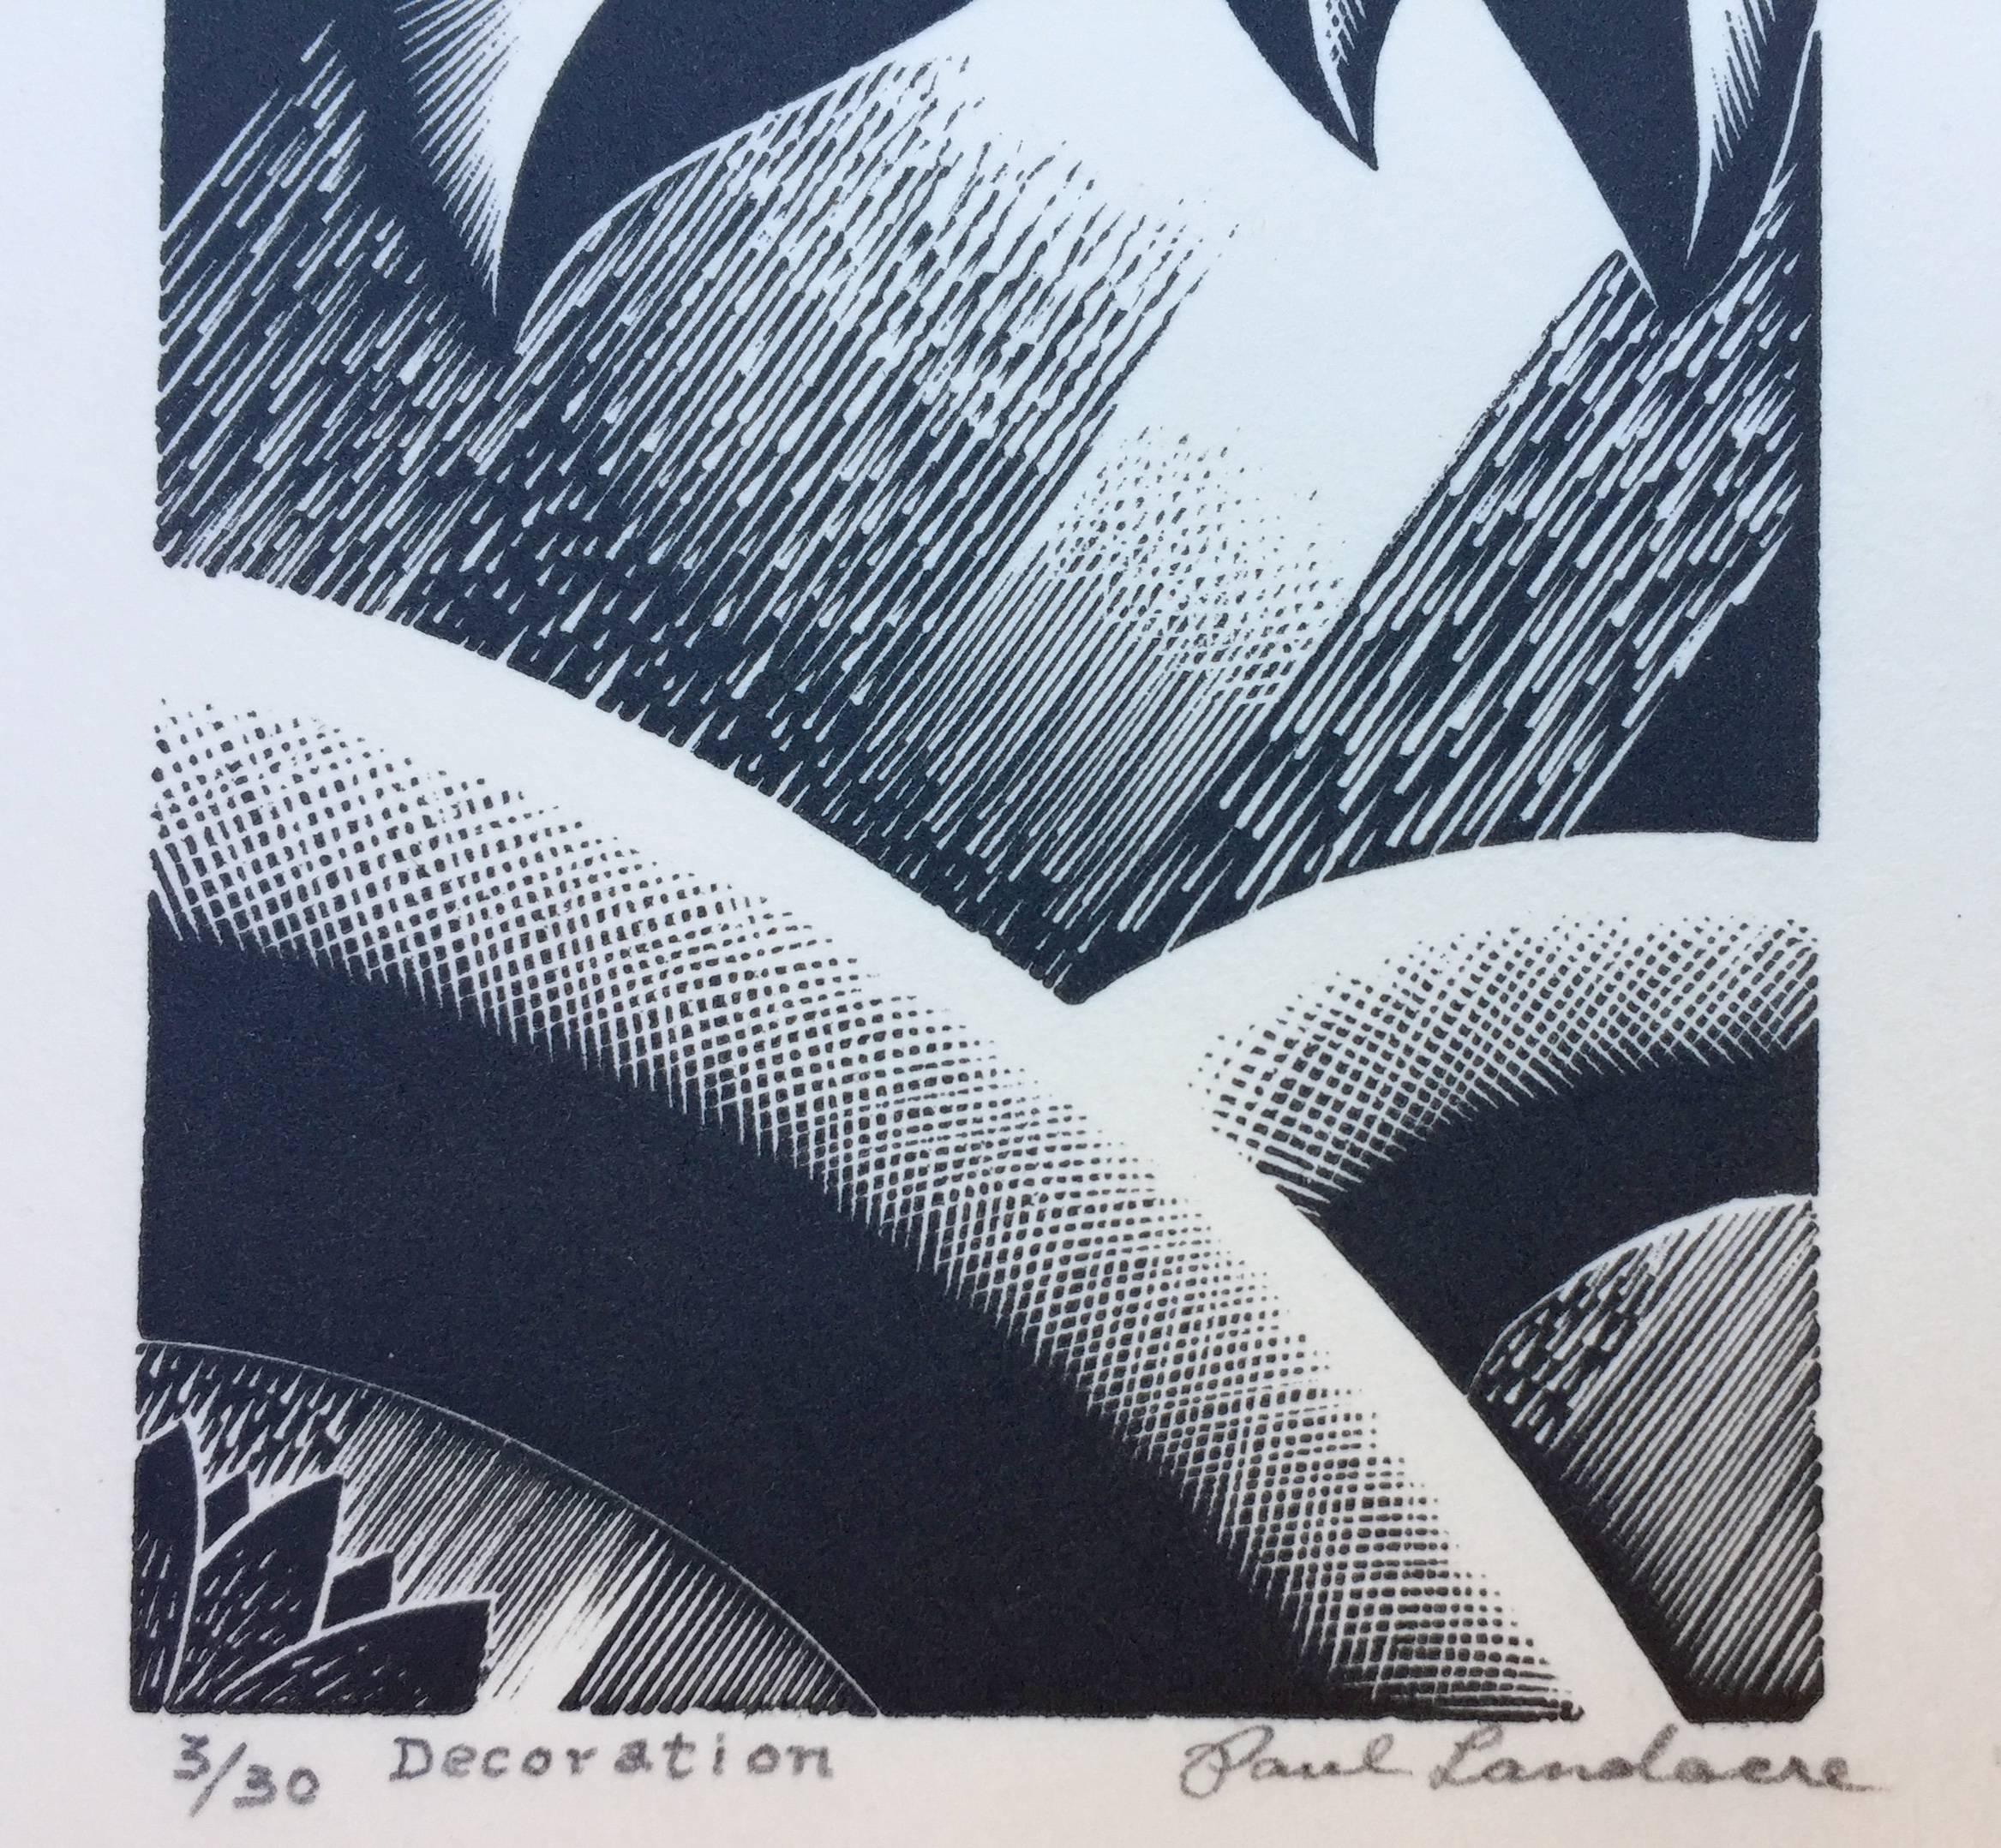 DEkorATION SCHmuck (Grau), Abstract Print, von Paul Landacre